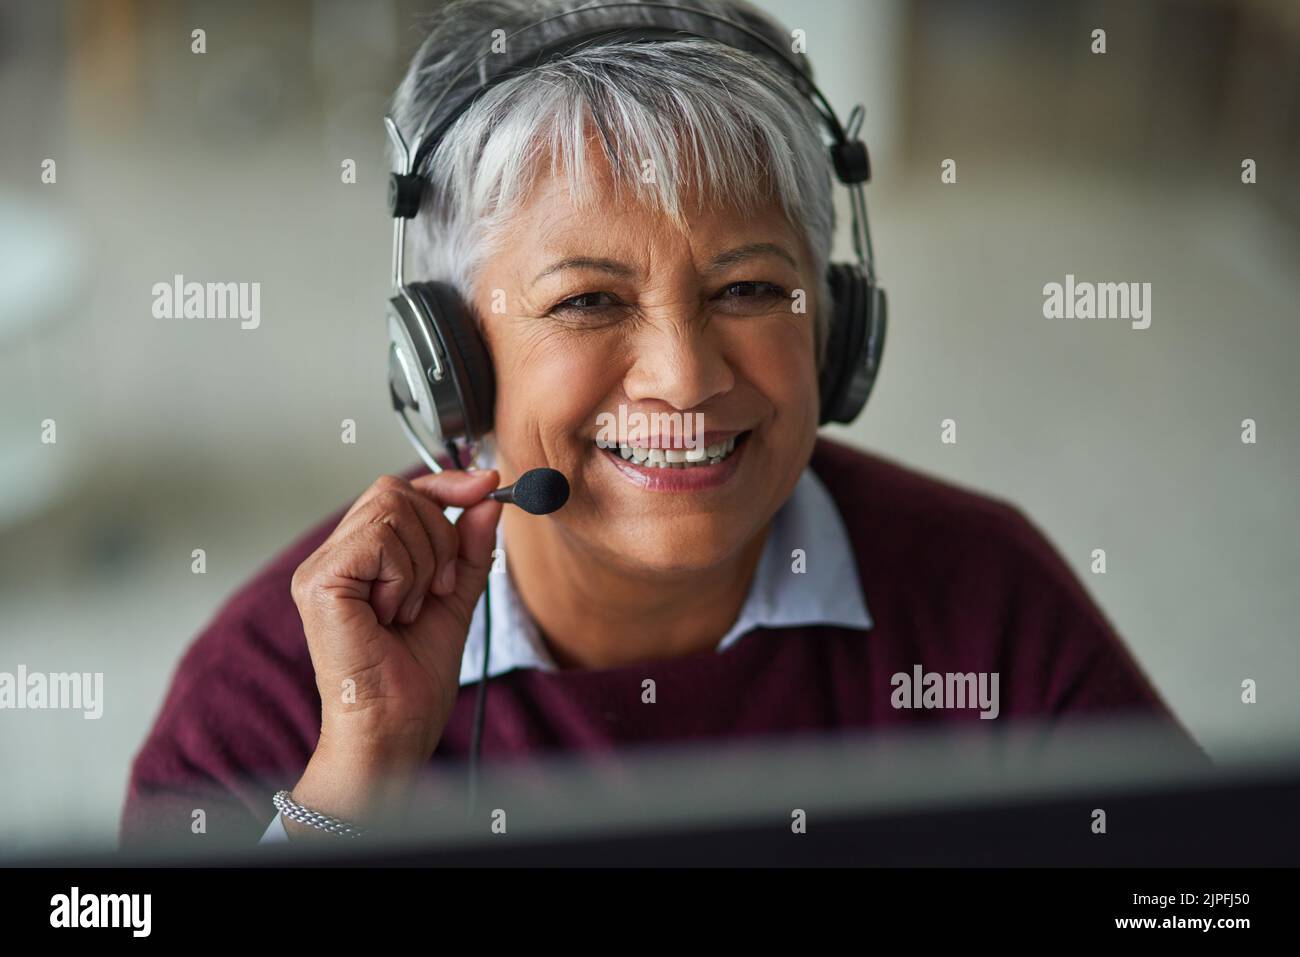 Hilfreiche Tipps sind nur einen Anruf entfernt. Porträt einer reifen Frau, die in einem Callcenter arbeitet. Stockfoto